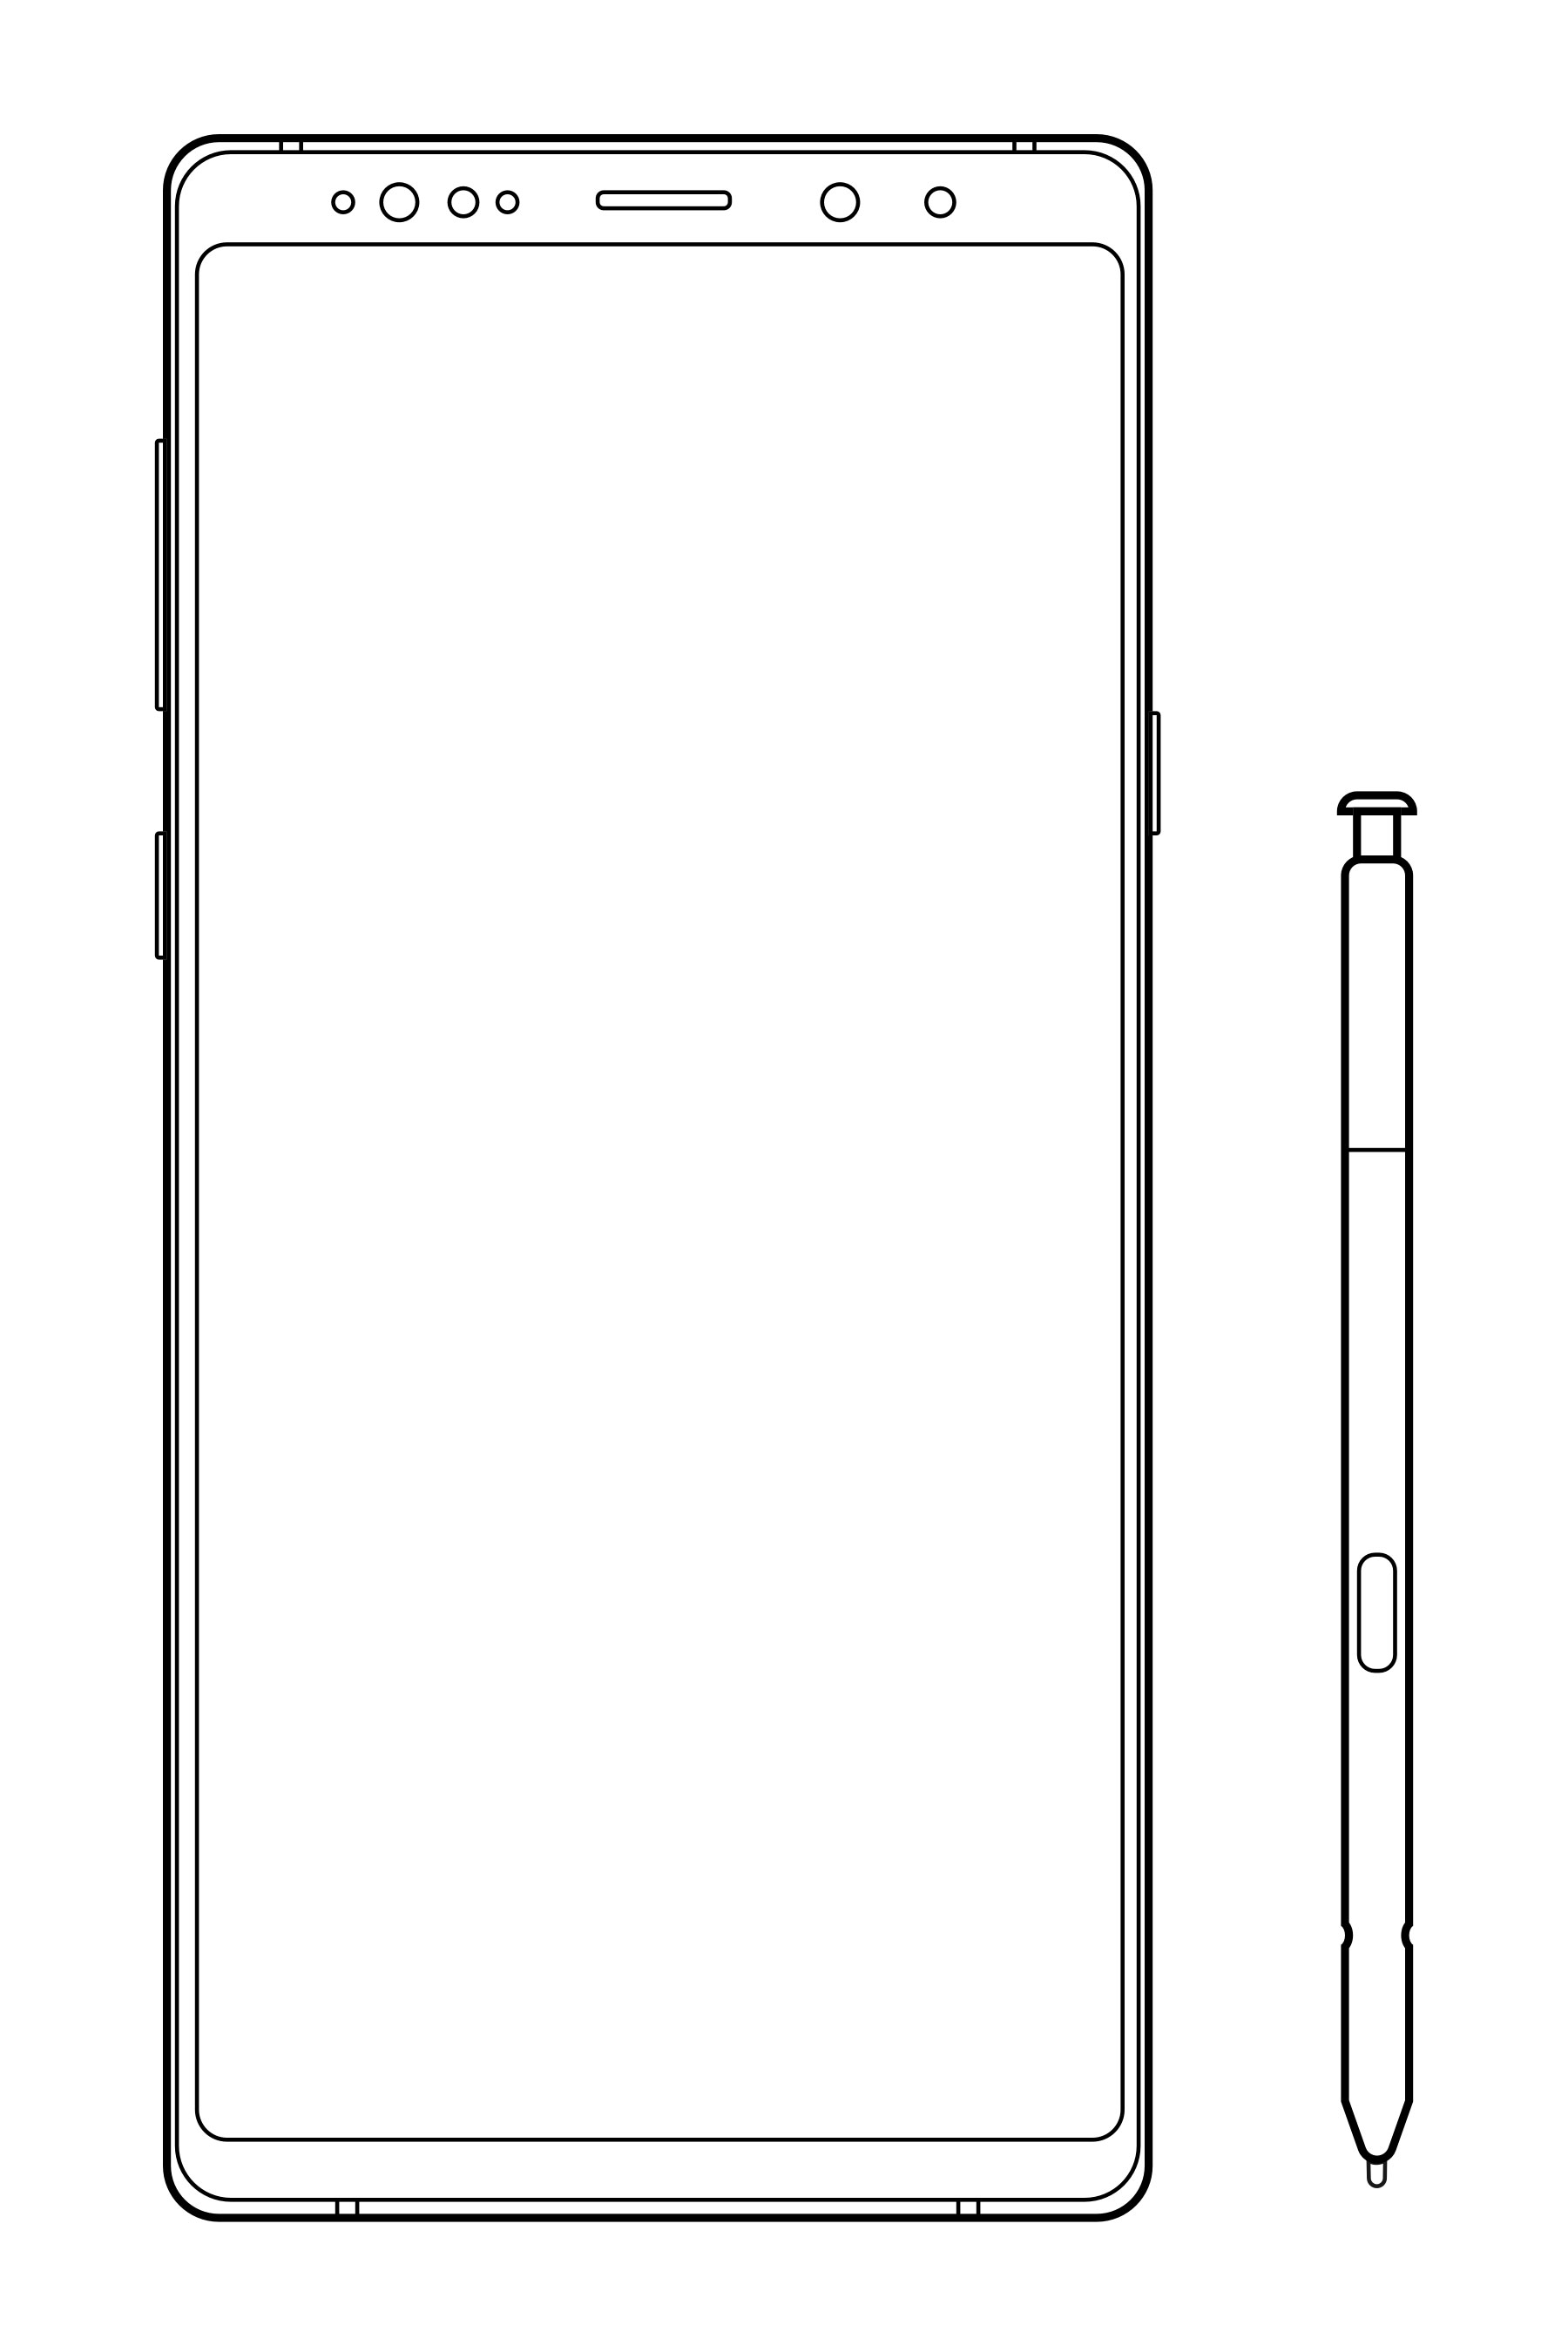 三星 Galaxy Note9 线框模型